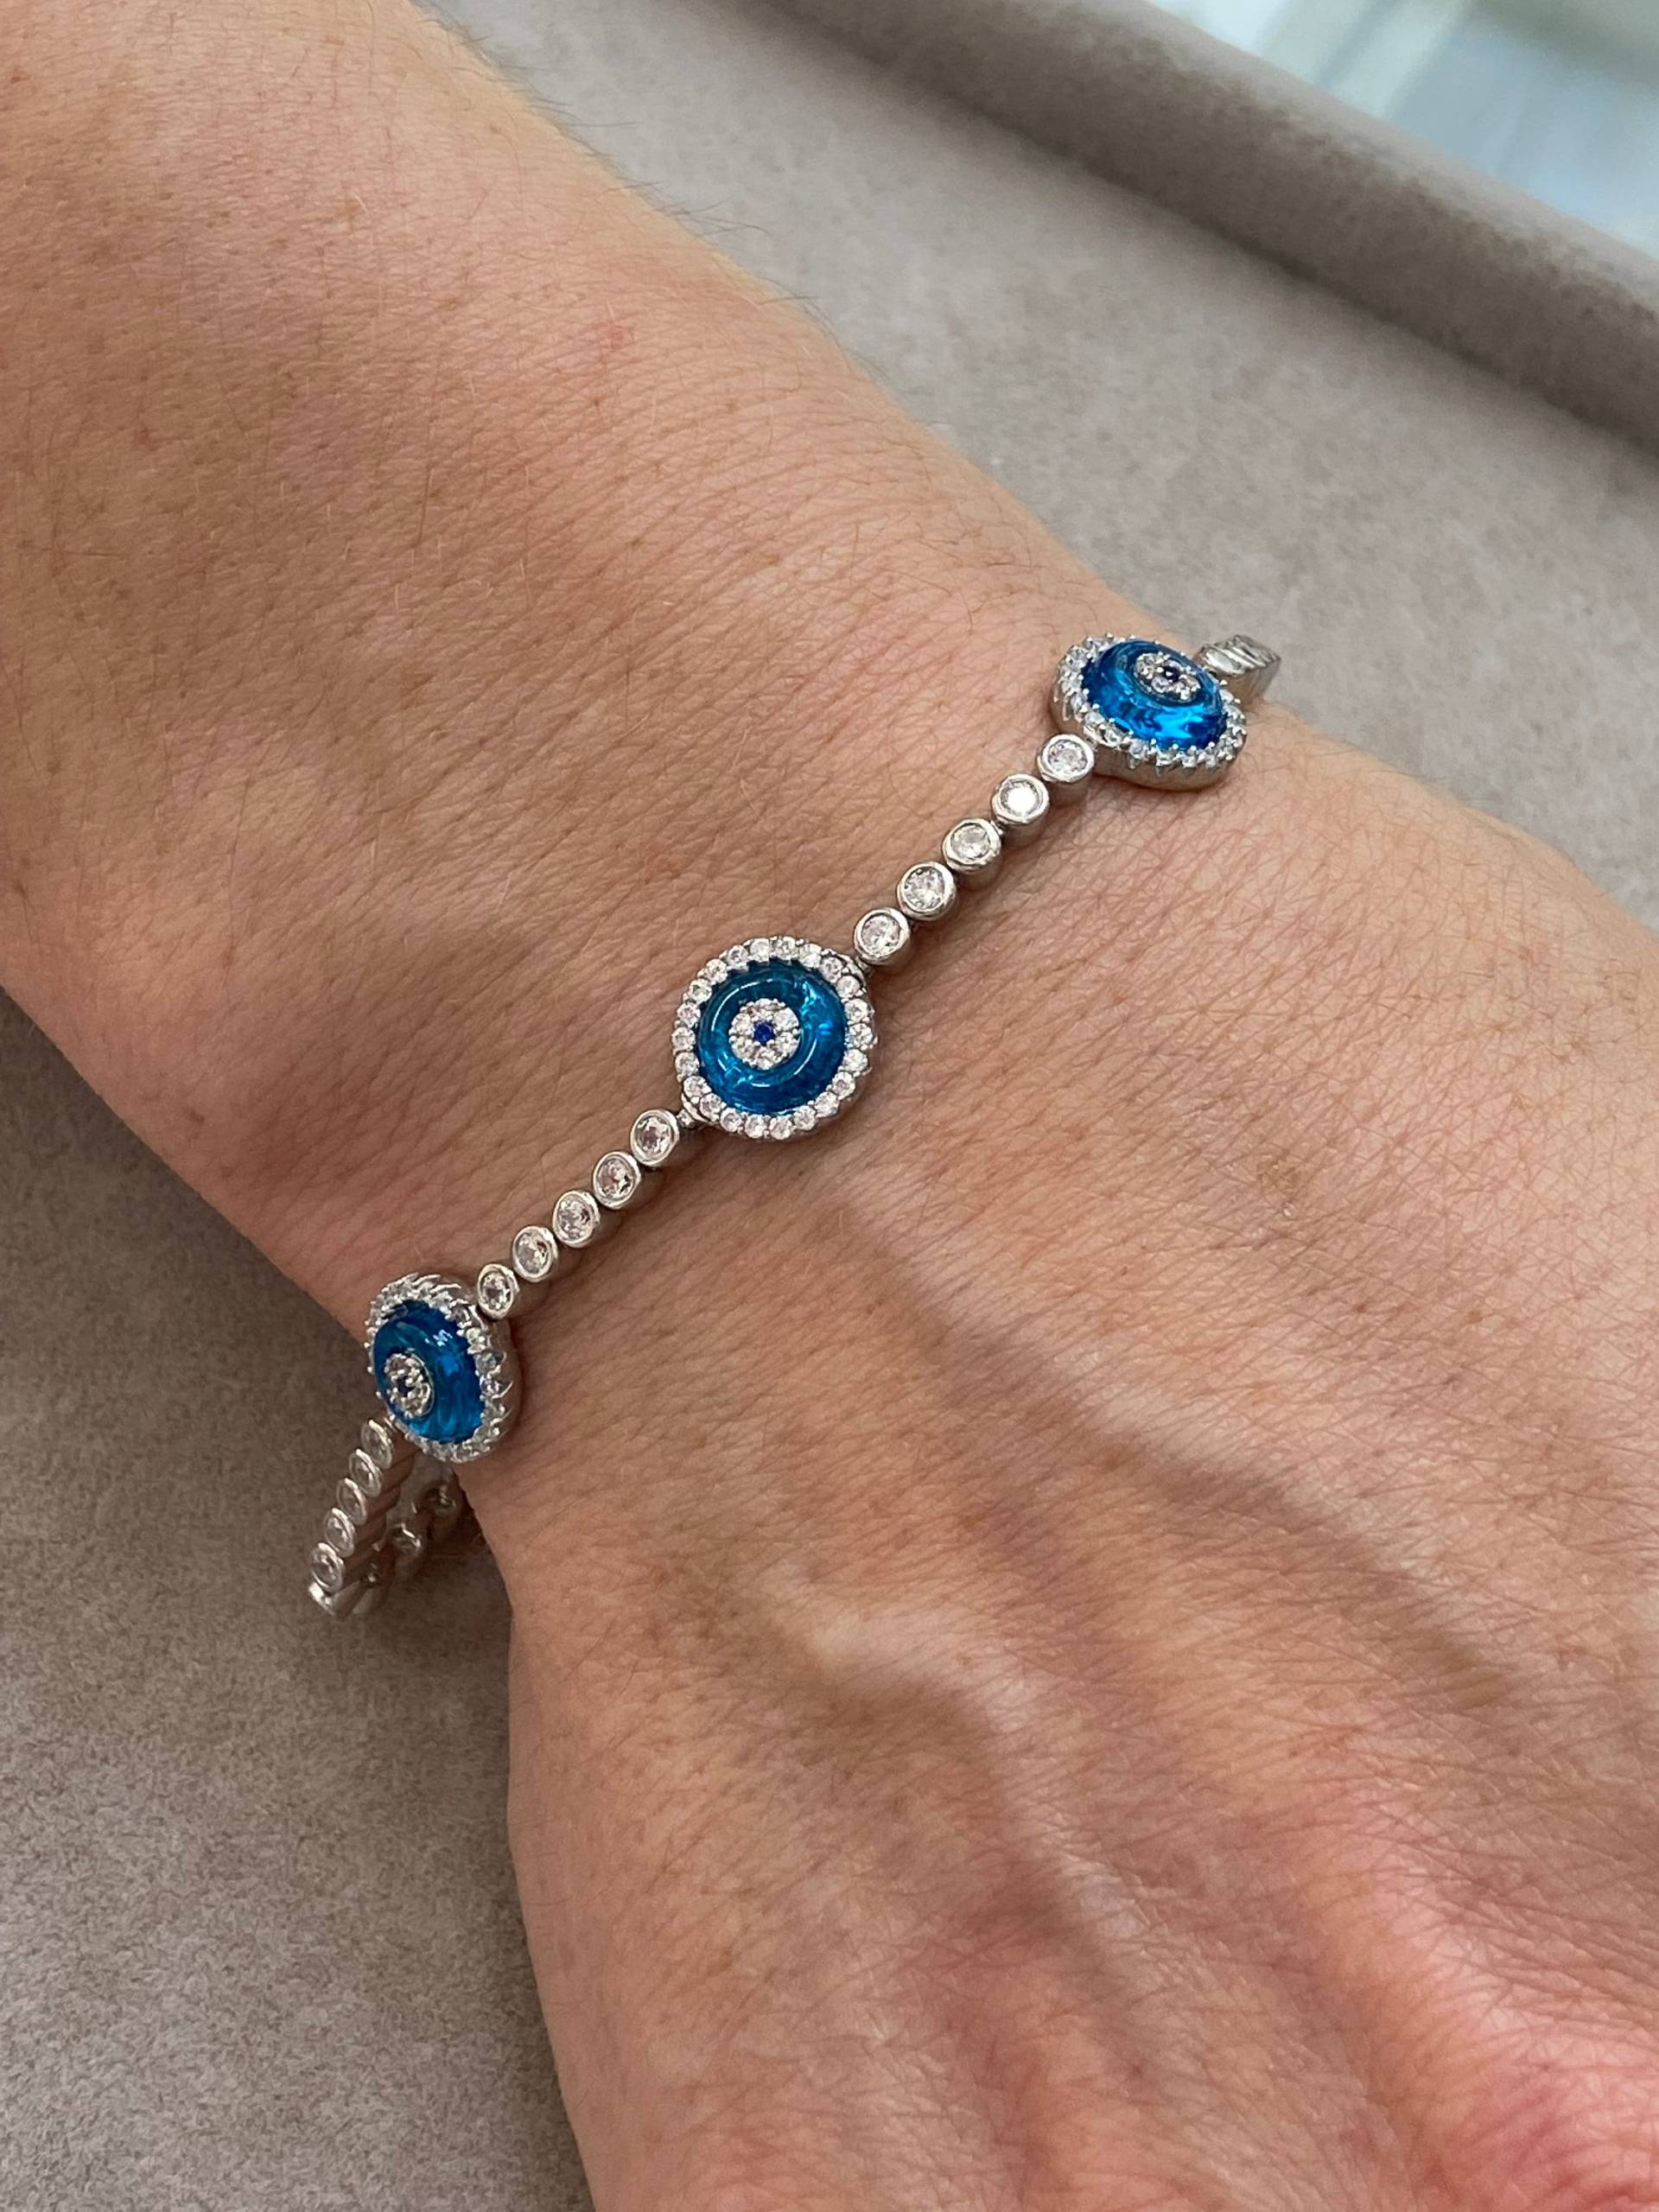 Silber Böses Auge Armband , Blaues Stein Tennis Handgemacht Schmuck 925K Sterling Geschenk Für Ihn von MercansilverTR